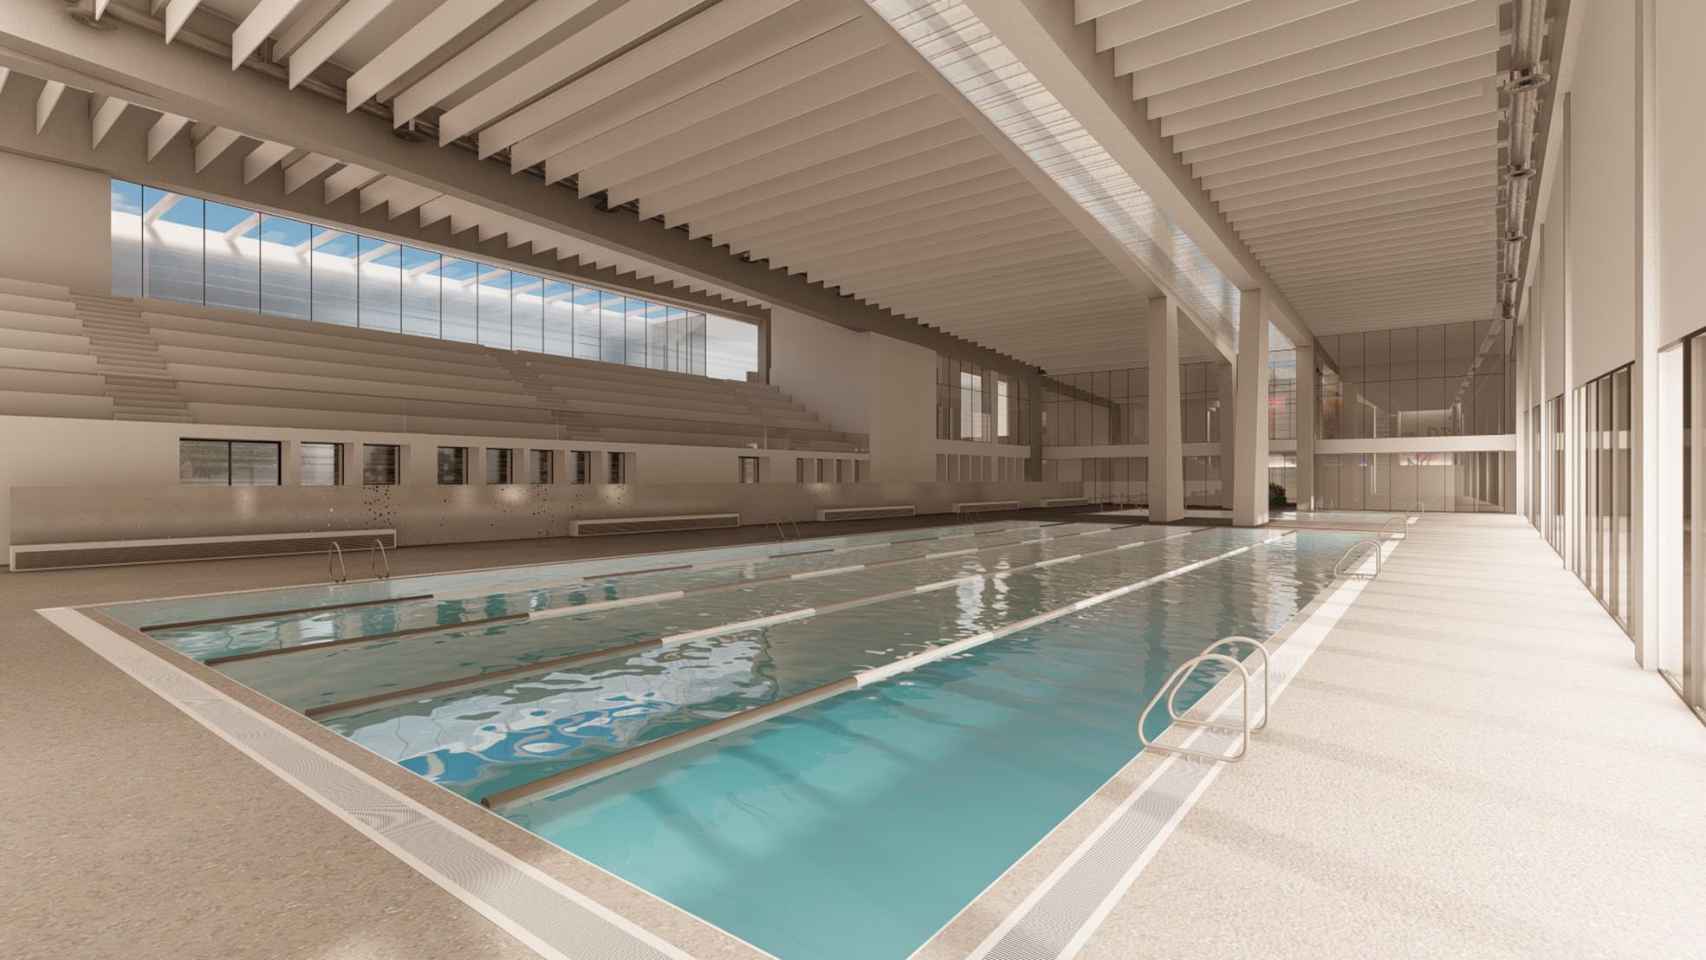 Imagen digital que muestra cómo será una de las piscinas cubiertas.